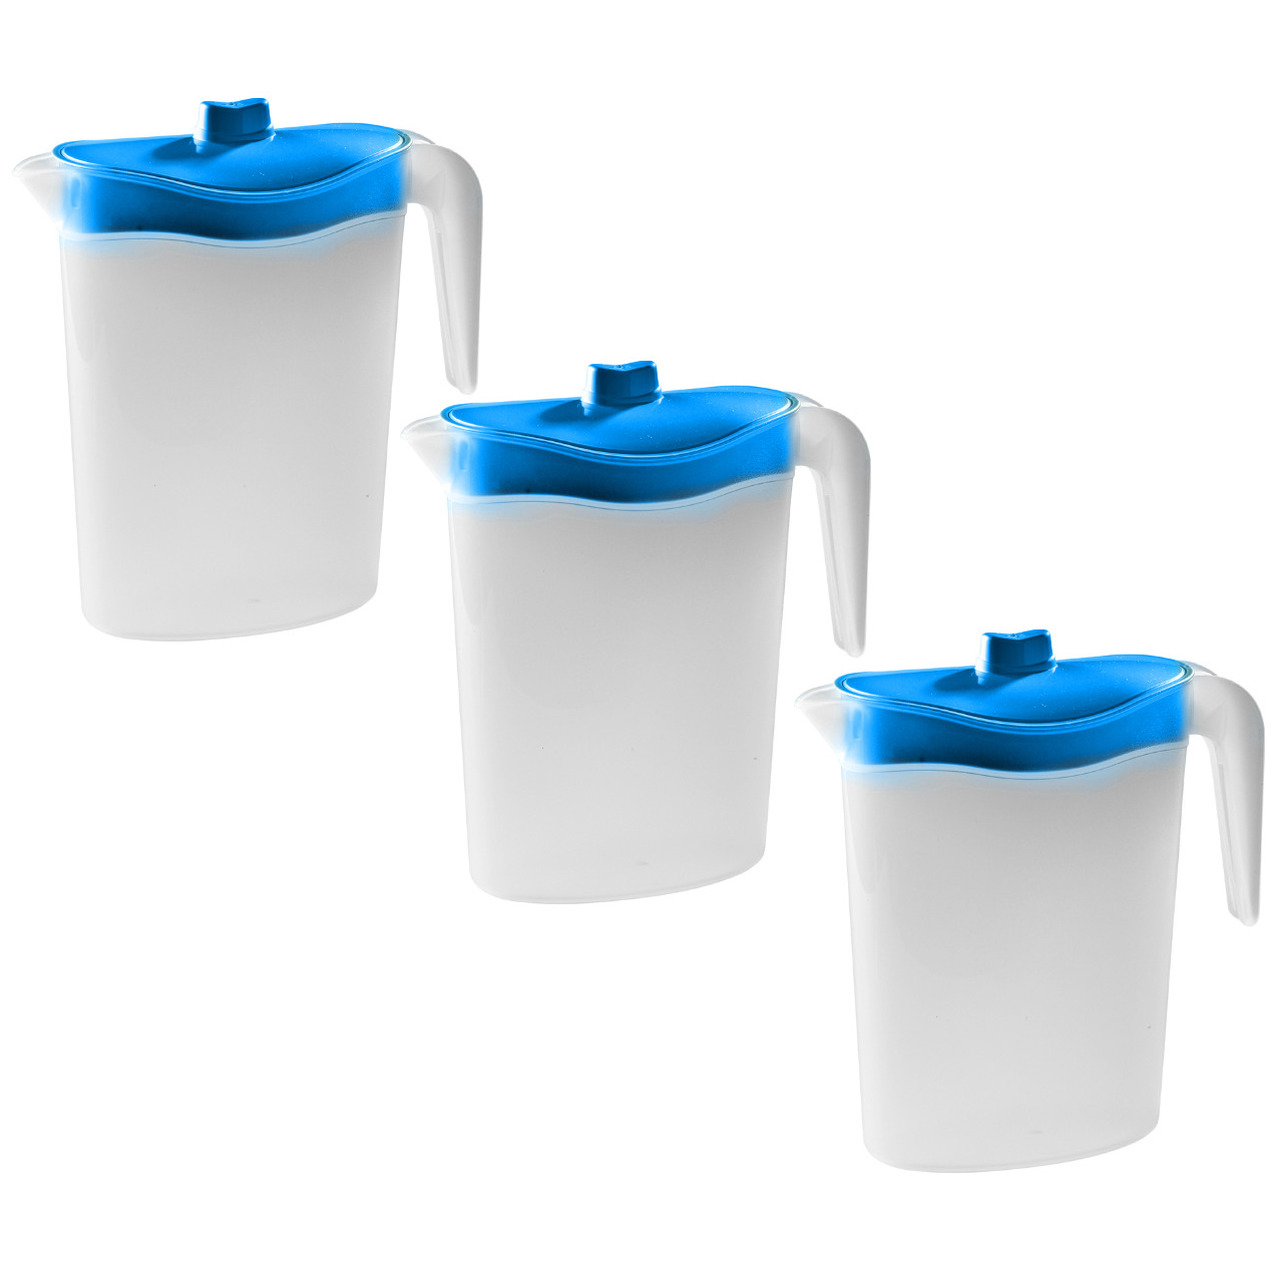 3x Smalle kunststof koelkast schenkkannen 1,5 liter met blauwe deksel